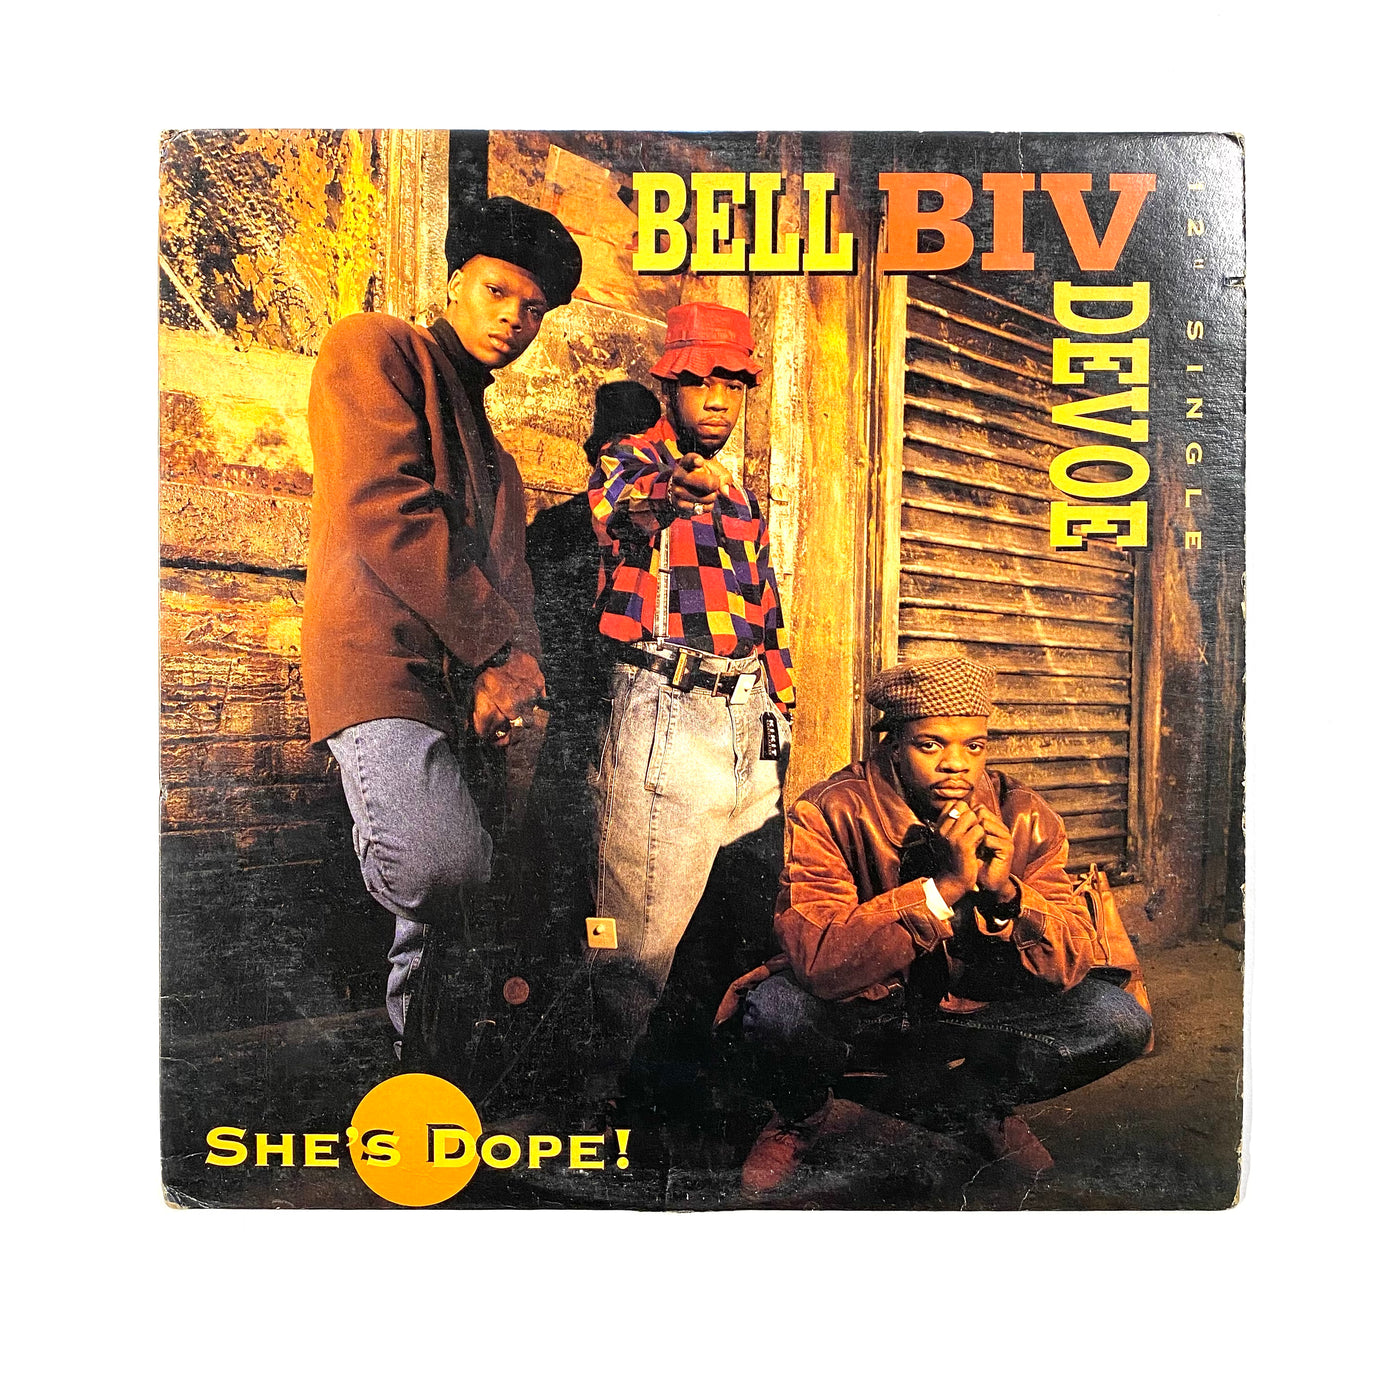 Bell Biv Devoe - She's Dope!